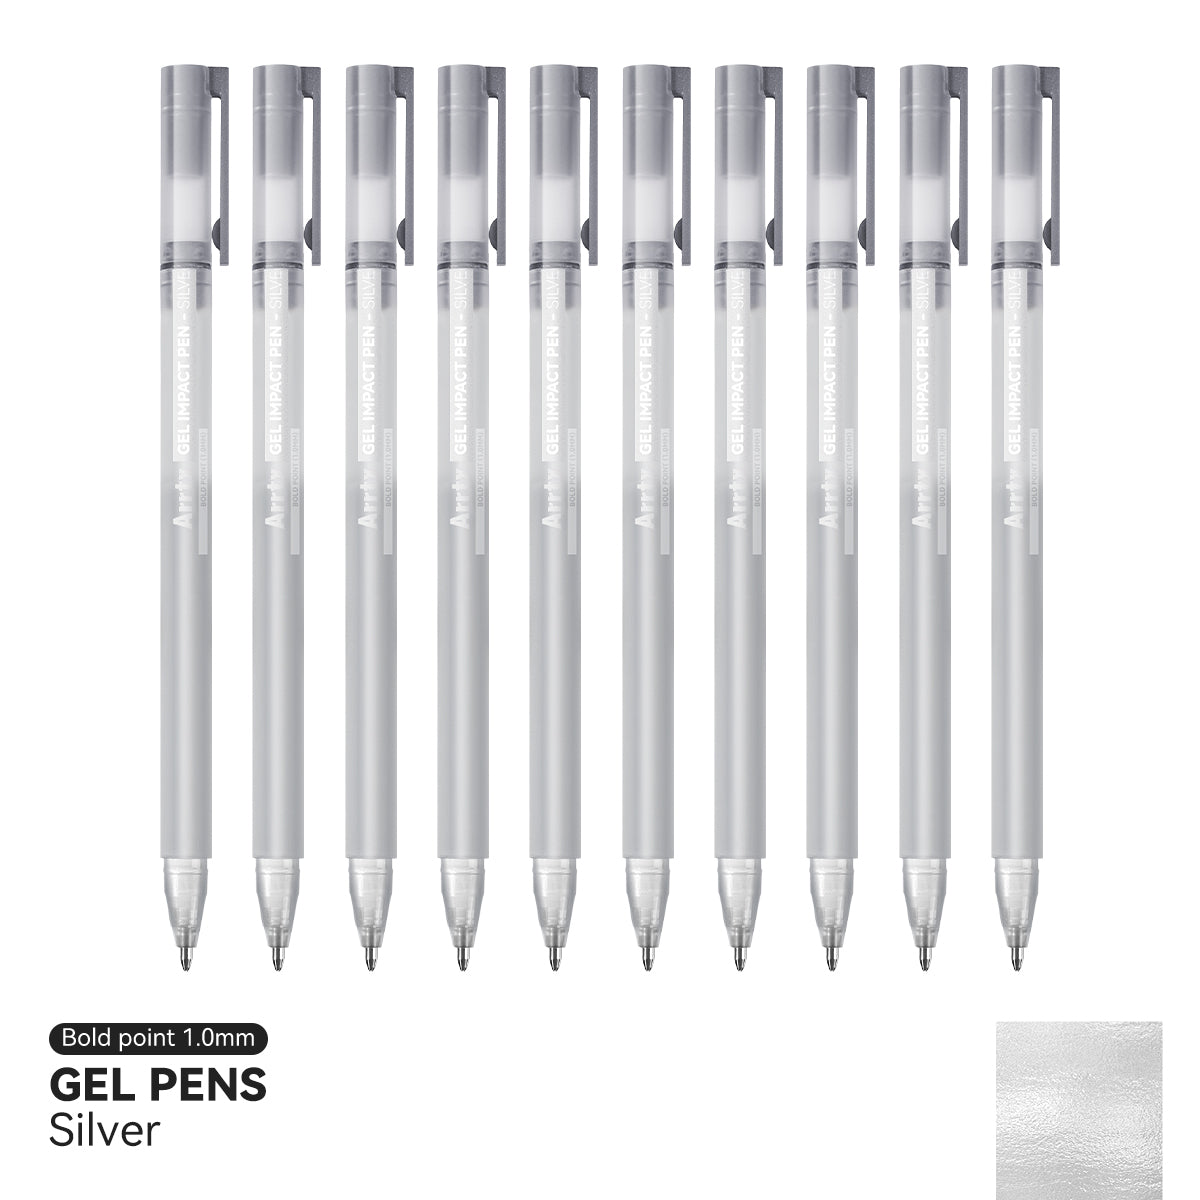 Arrtx Gel Pens Silver Color 10 Pack Bold Point Gel Ink Pens